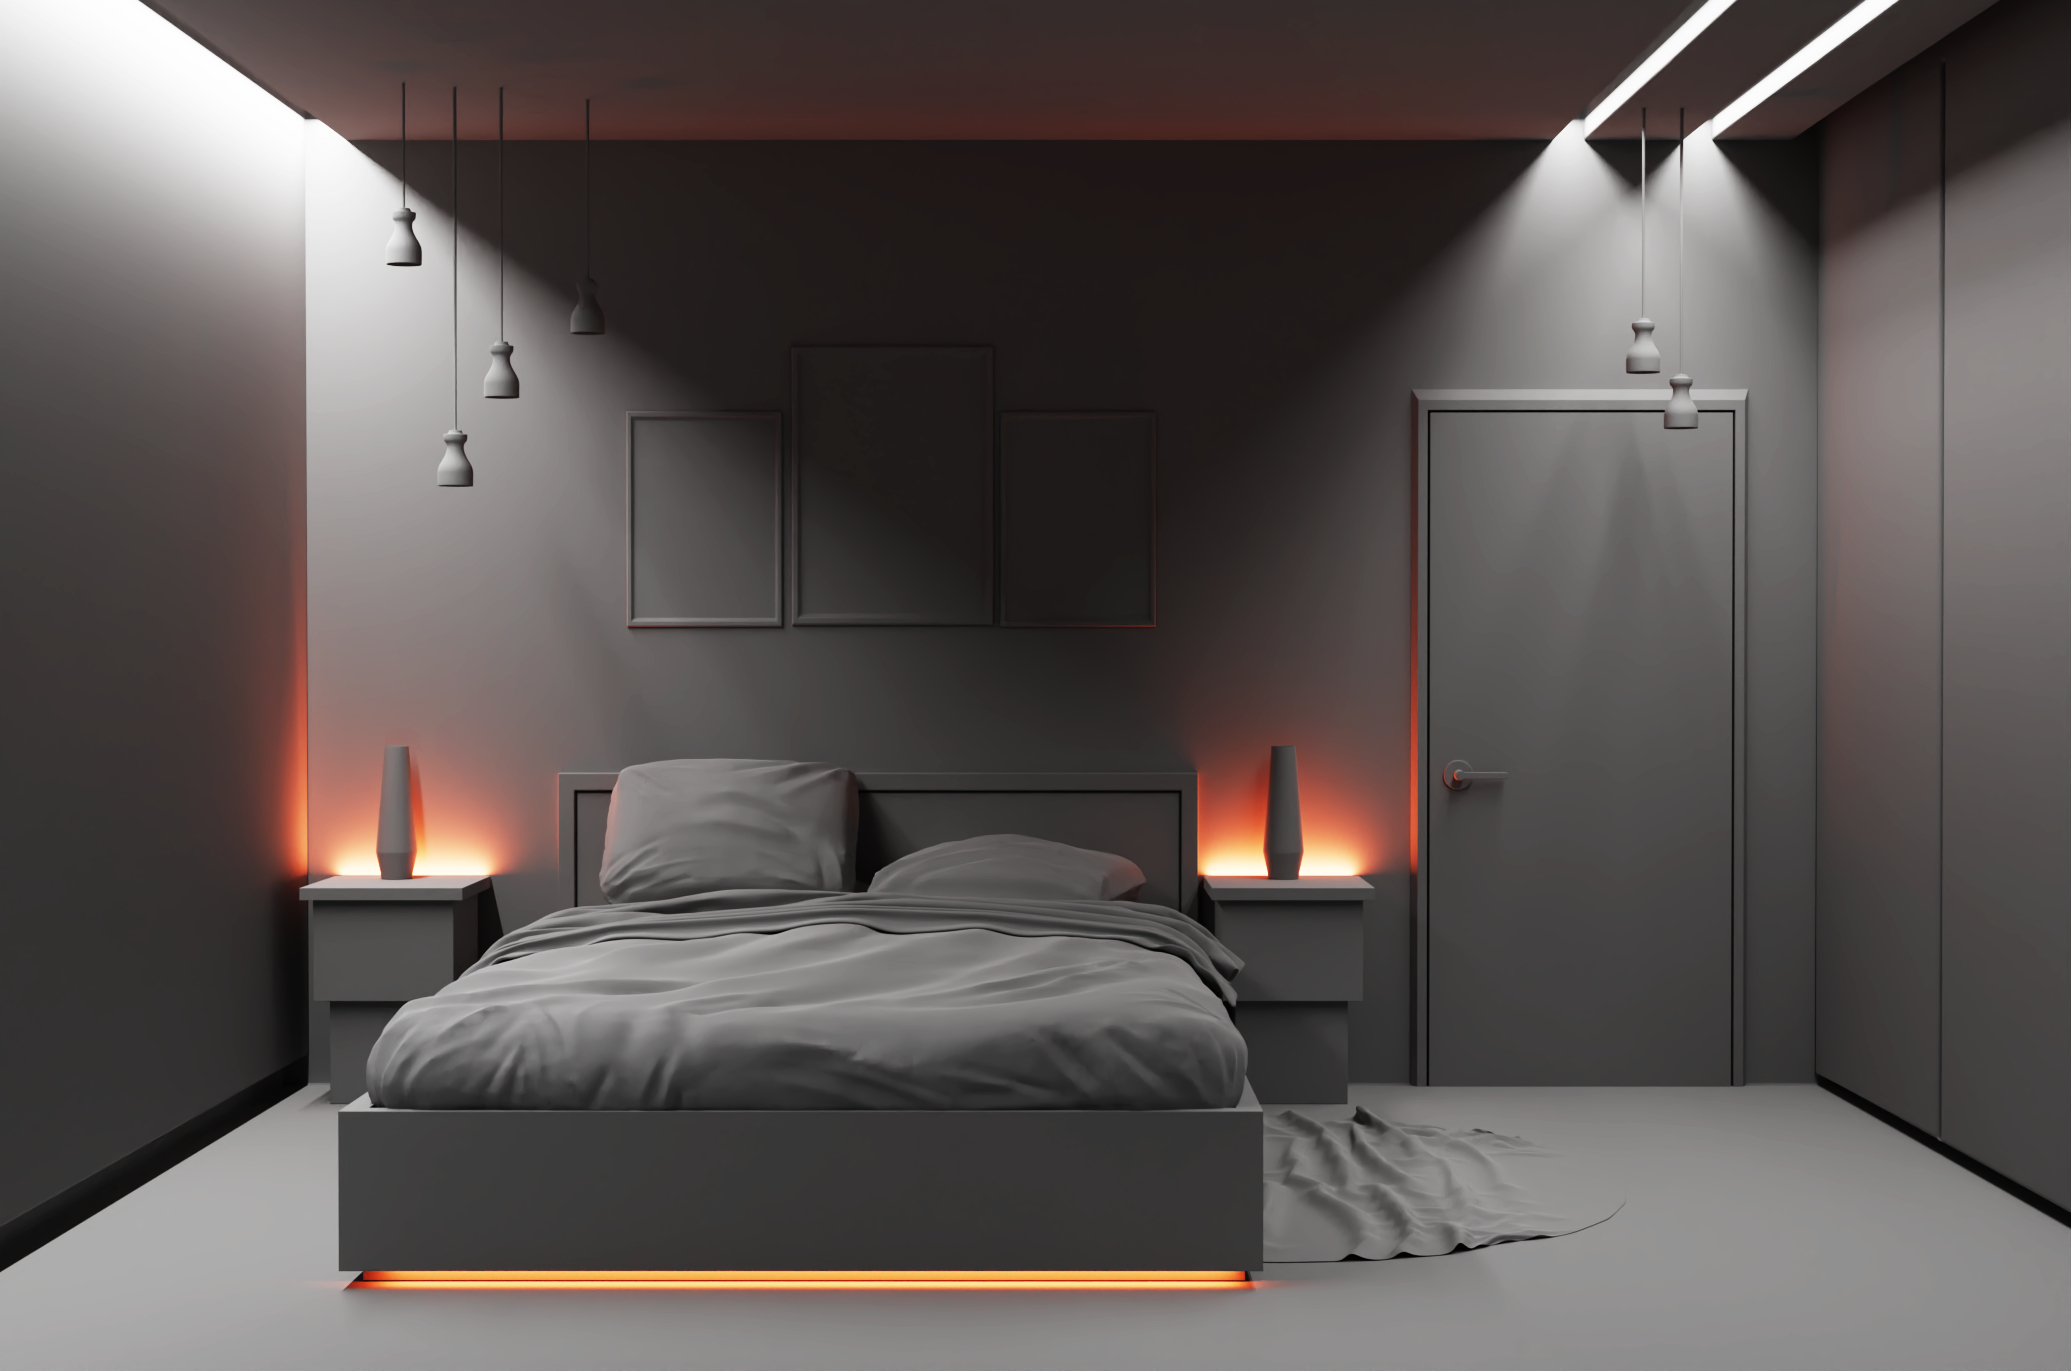 Bedroom in Blender cycles render image